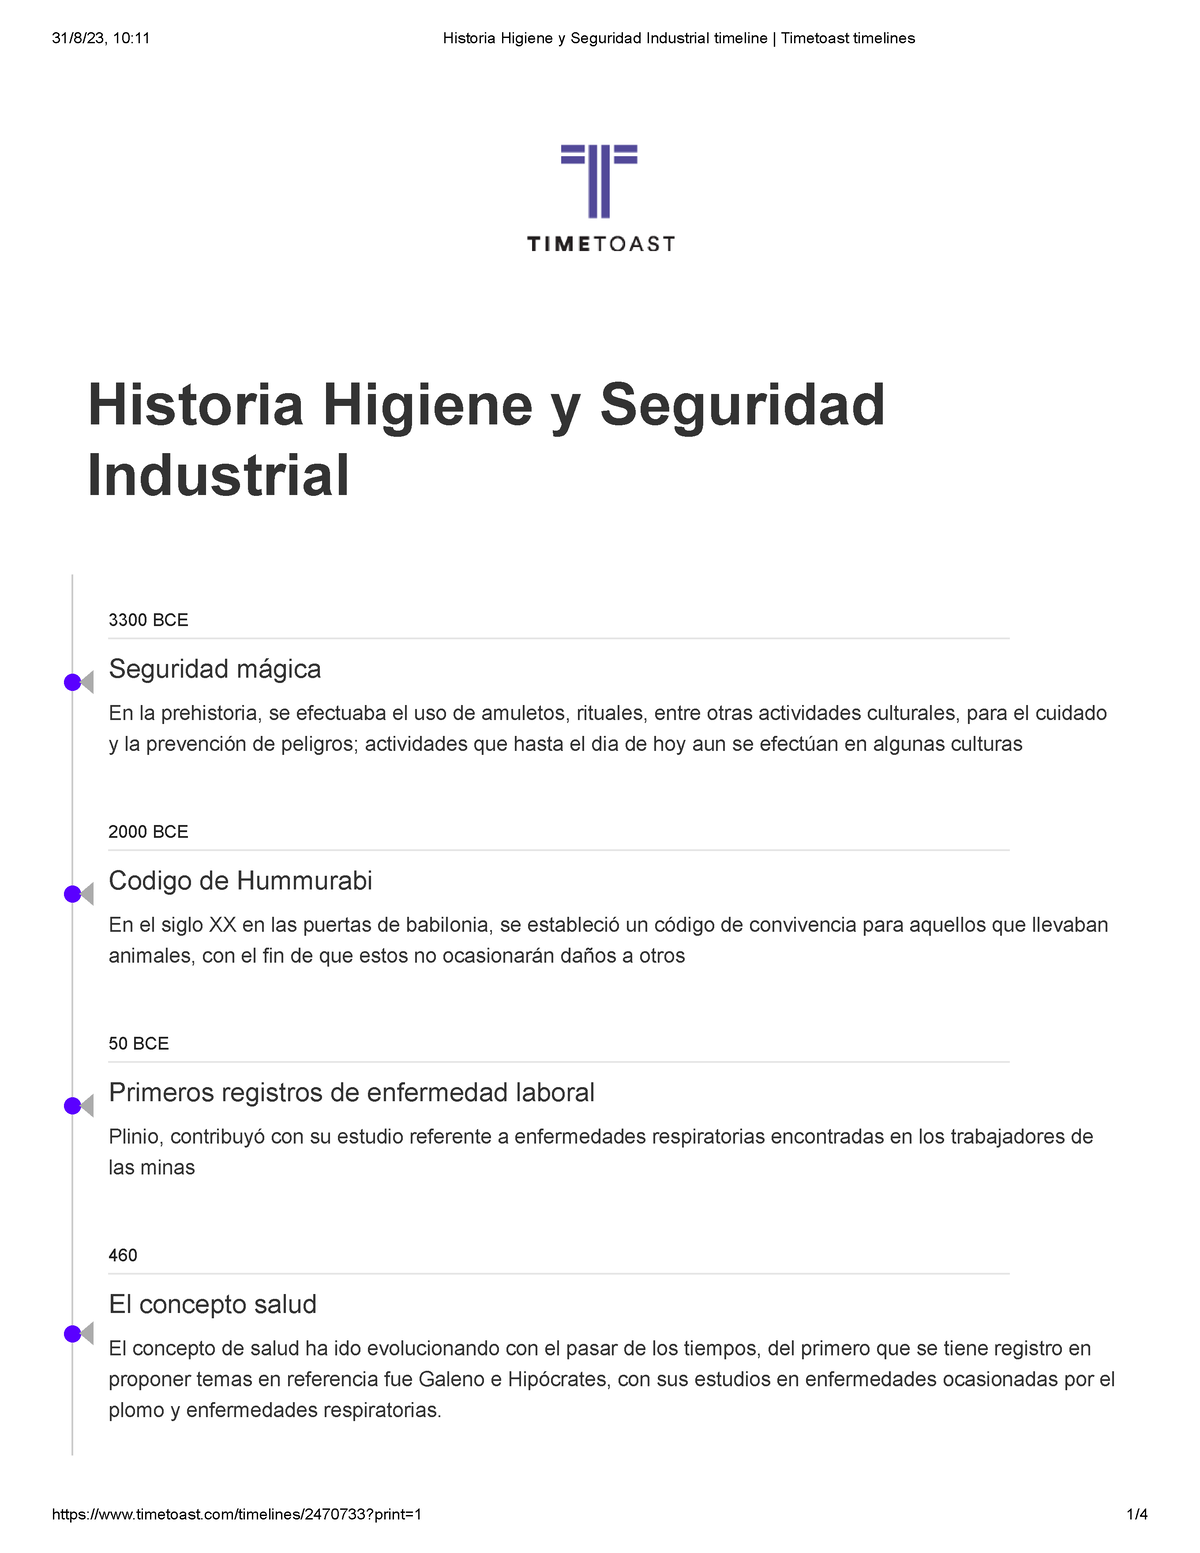 Historia Higiene Y Seguridad Industrial Timeline Timetoast Timelines Historia Higiene Y 8273